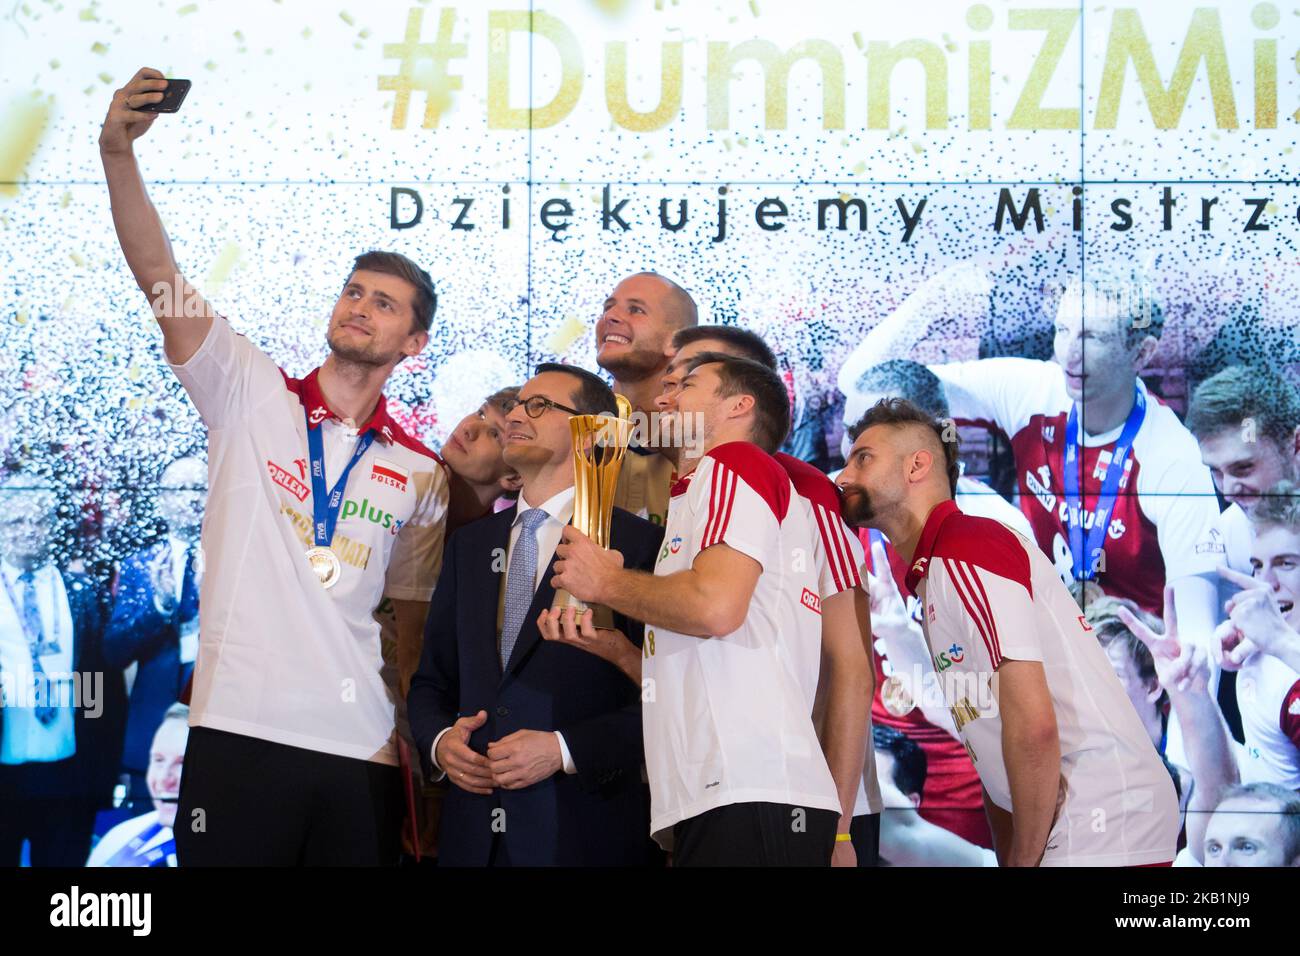 Mateusz Morawiecki, Primer Ministro de Polonia, durante la reunión con el equipo nacional de voleibol masculino de Polonia en la Cancillería del Primer Ministro en Varsovia, Polonia, el 1 de octubre de 2018. Polonia ganó la medalla de oro después de derrotar a Brasil en la final del Campeonato Mundial Masculino de Voleibol FIVB en Turín el 30 de septiembre. (Foto de Mateusz Wlodarczyk/NurPhoto) Foto de stock